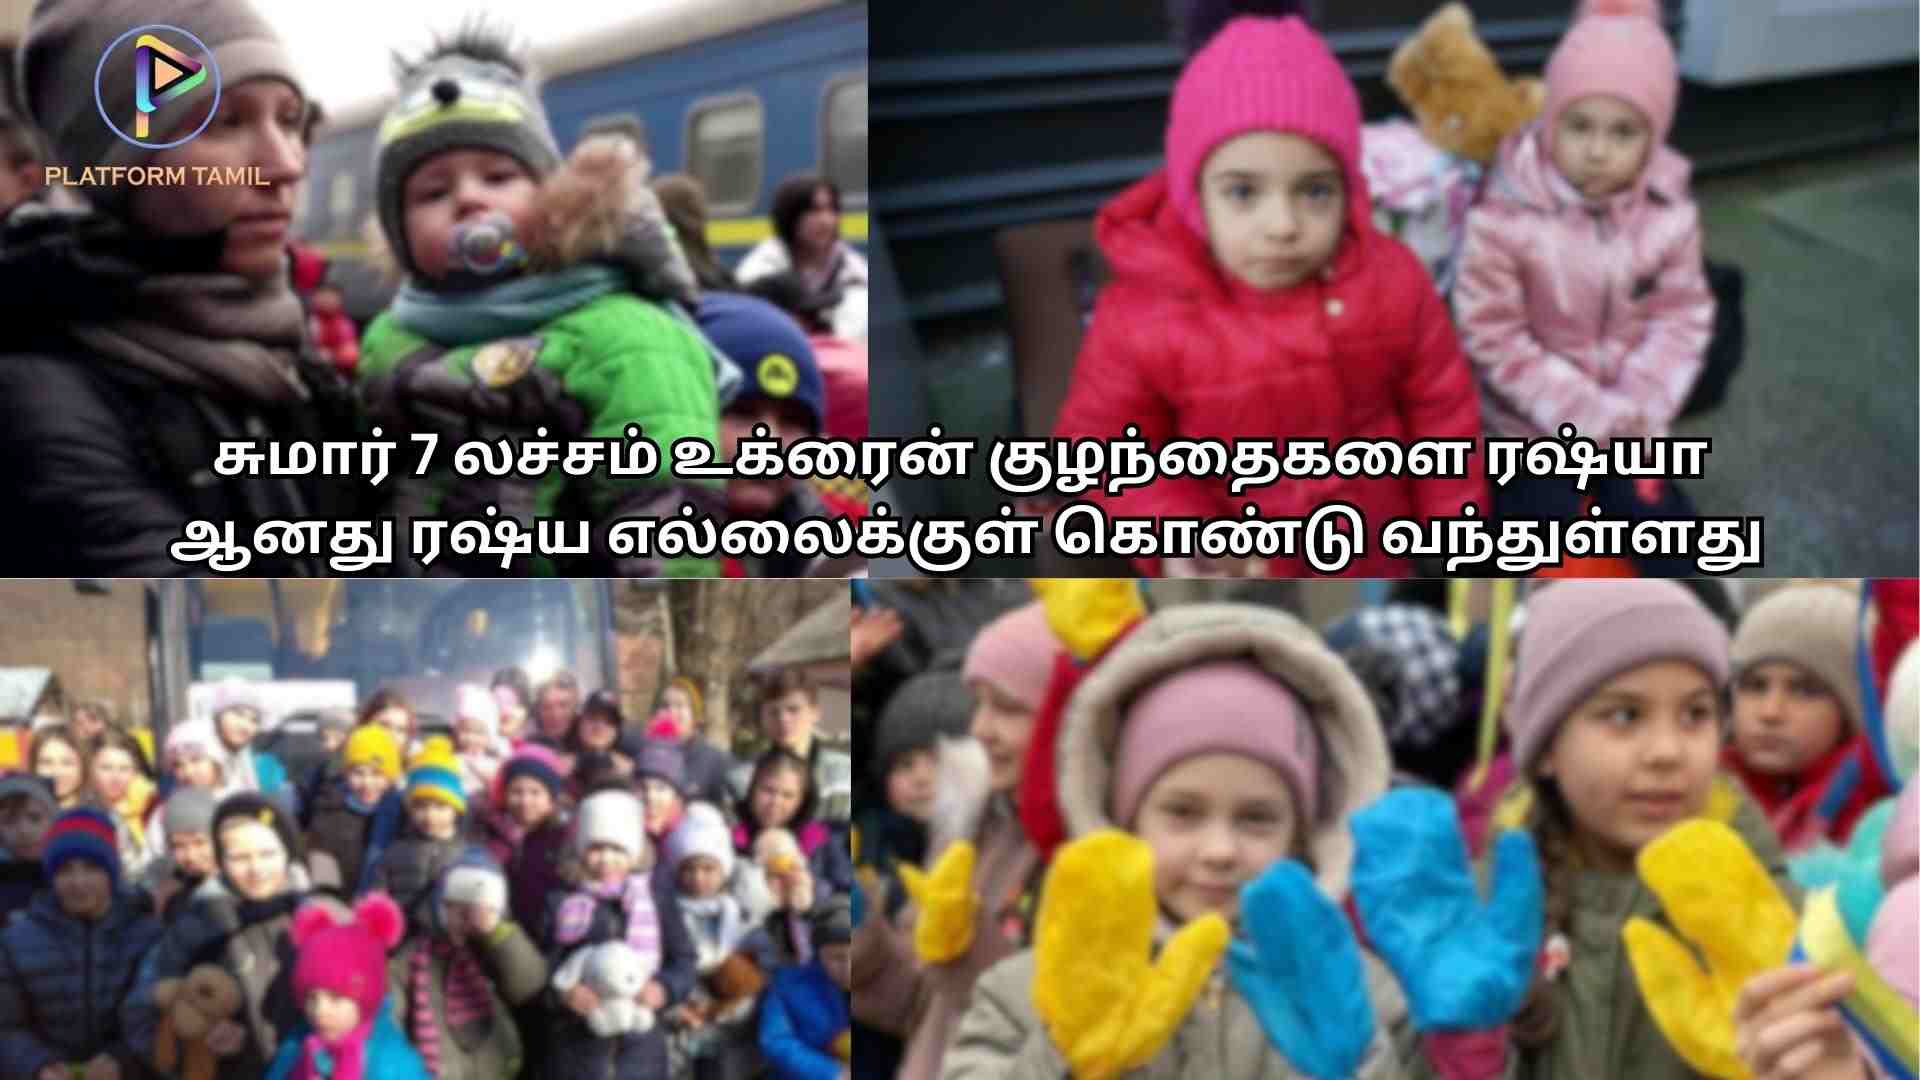 உக்ரைன் குழந்தைகள் நாடுகடத்தல் - Platform Tamil